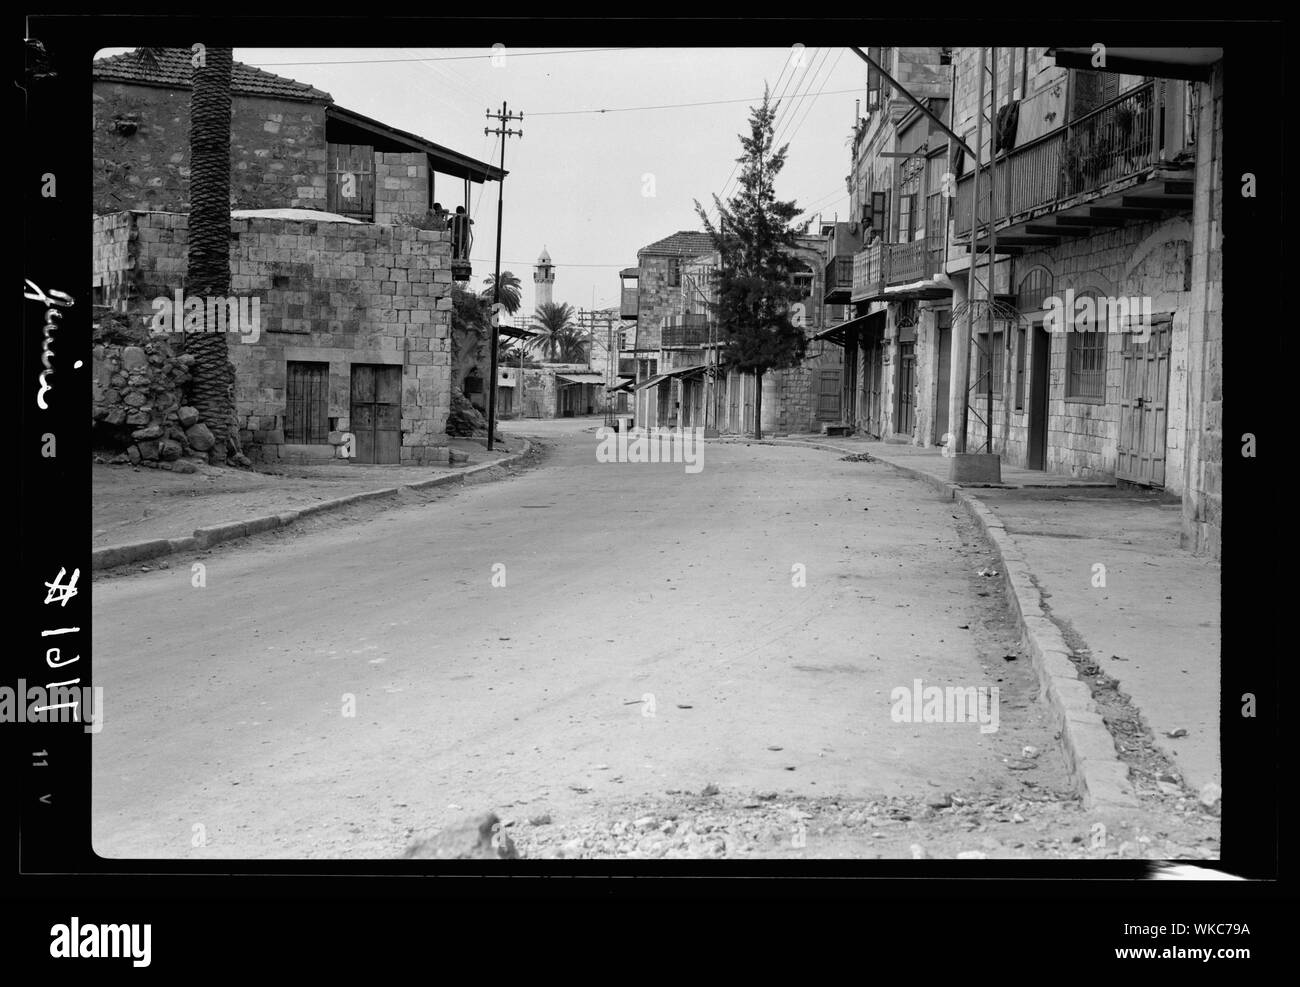 Jénine. En vertu déserte 22 heures de couvre-feu, le 1 mai, 1938 Banque D'Images